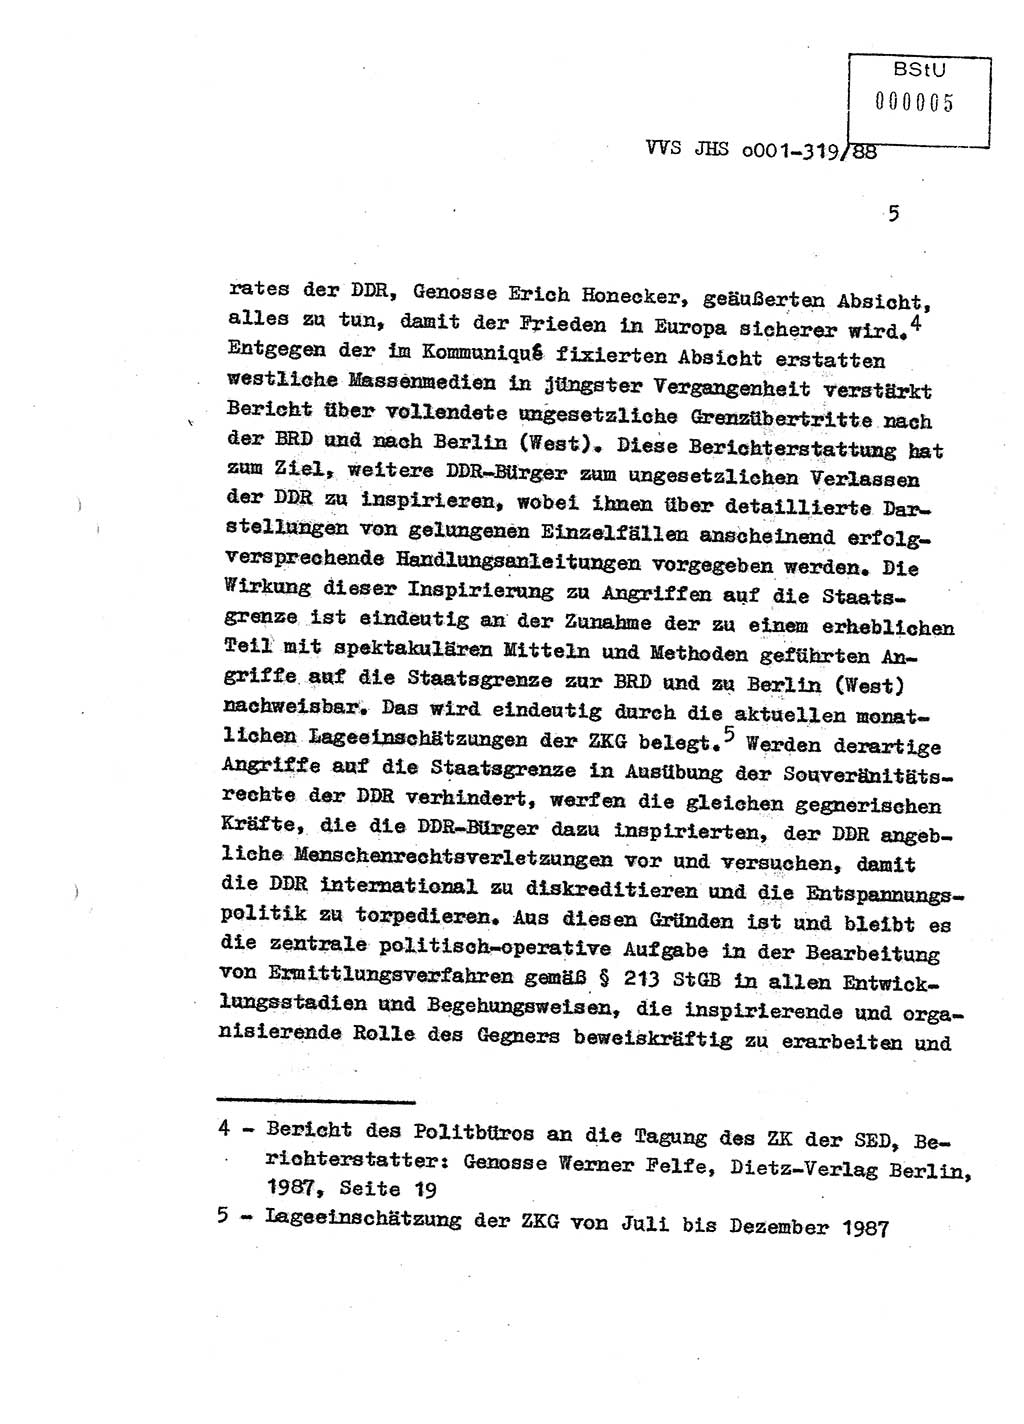 Diplomarbeit Offiziersschüler Holger Zirnstein (HA Ⅸ/9), Ministerium für Staatssicherheit (MfS) [Deutsche Demokratische Republik (DDR)], Juristische Hochschule (JHS), Vertrauliche Verschlußsache (VVS) o001-319/88, Potsdam 1988, Blatt 5 (Dipl.-Arb. MfS DDR JHS VVS o001-319/88 1988, Bl. 5)